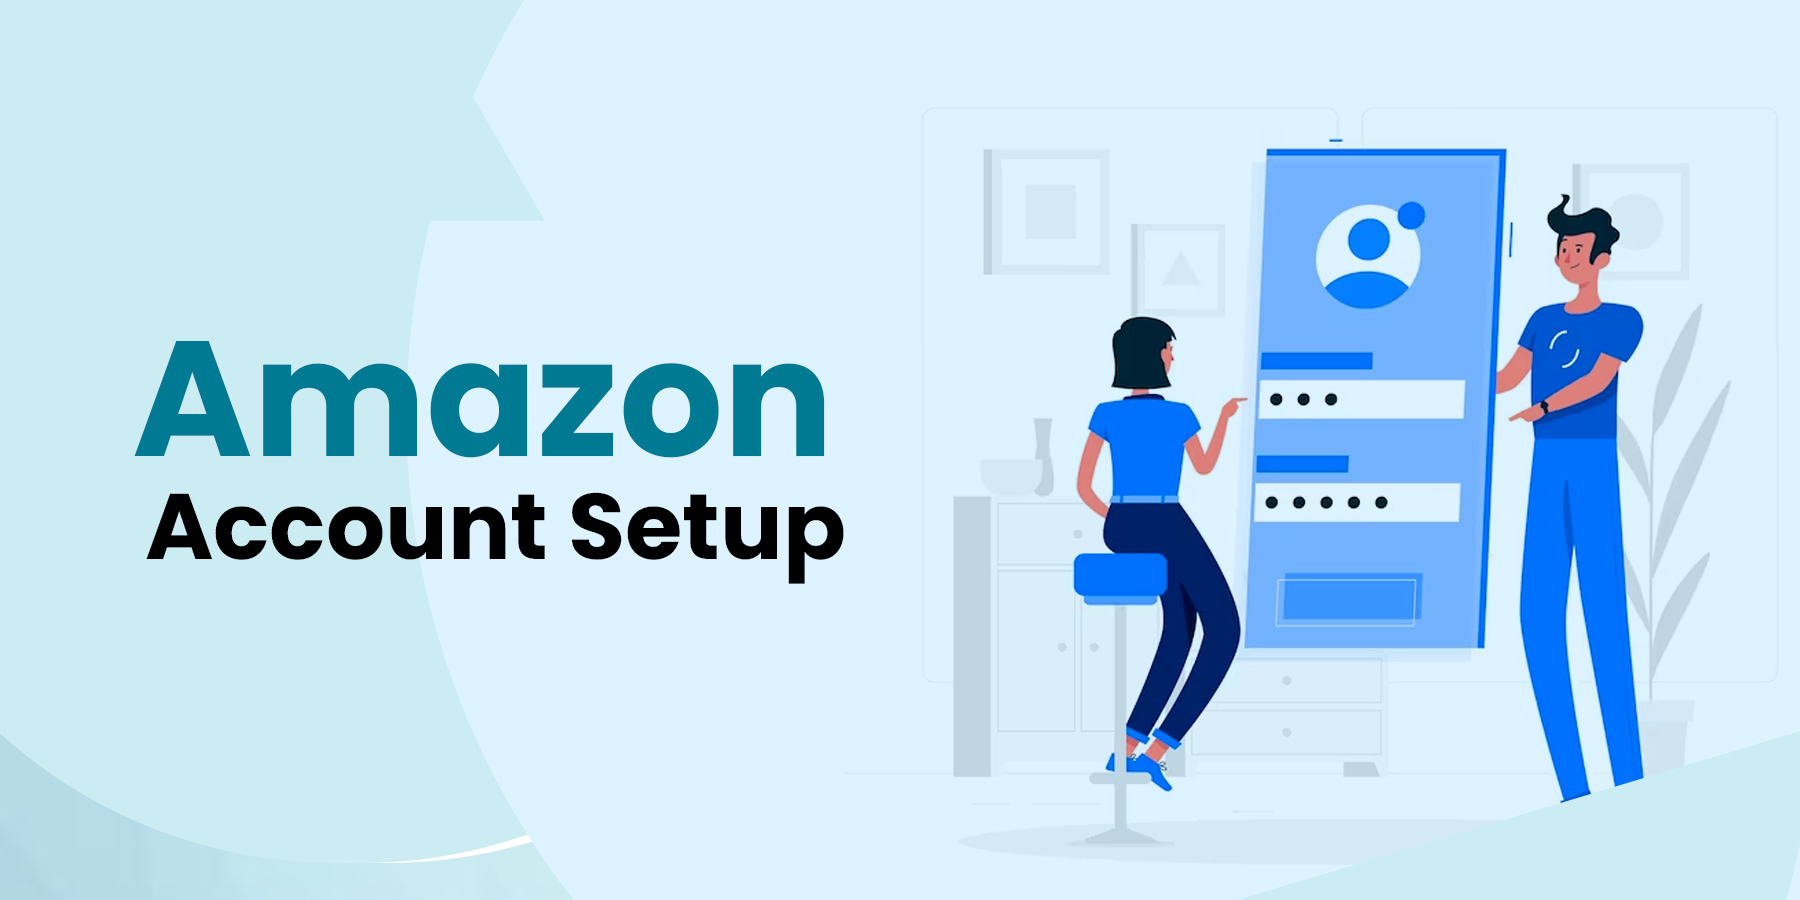 Amazon Account Setup